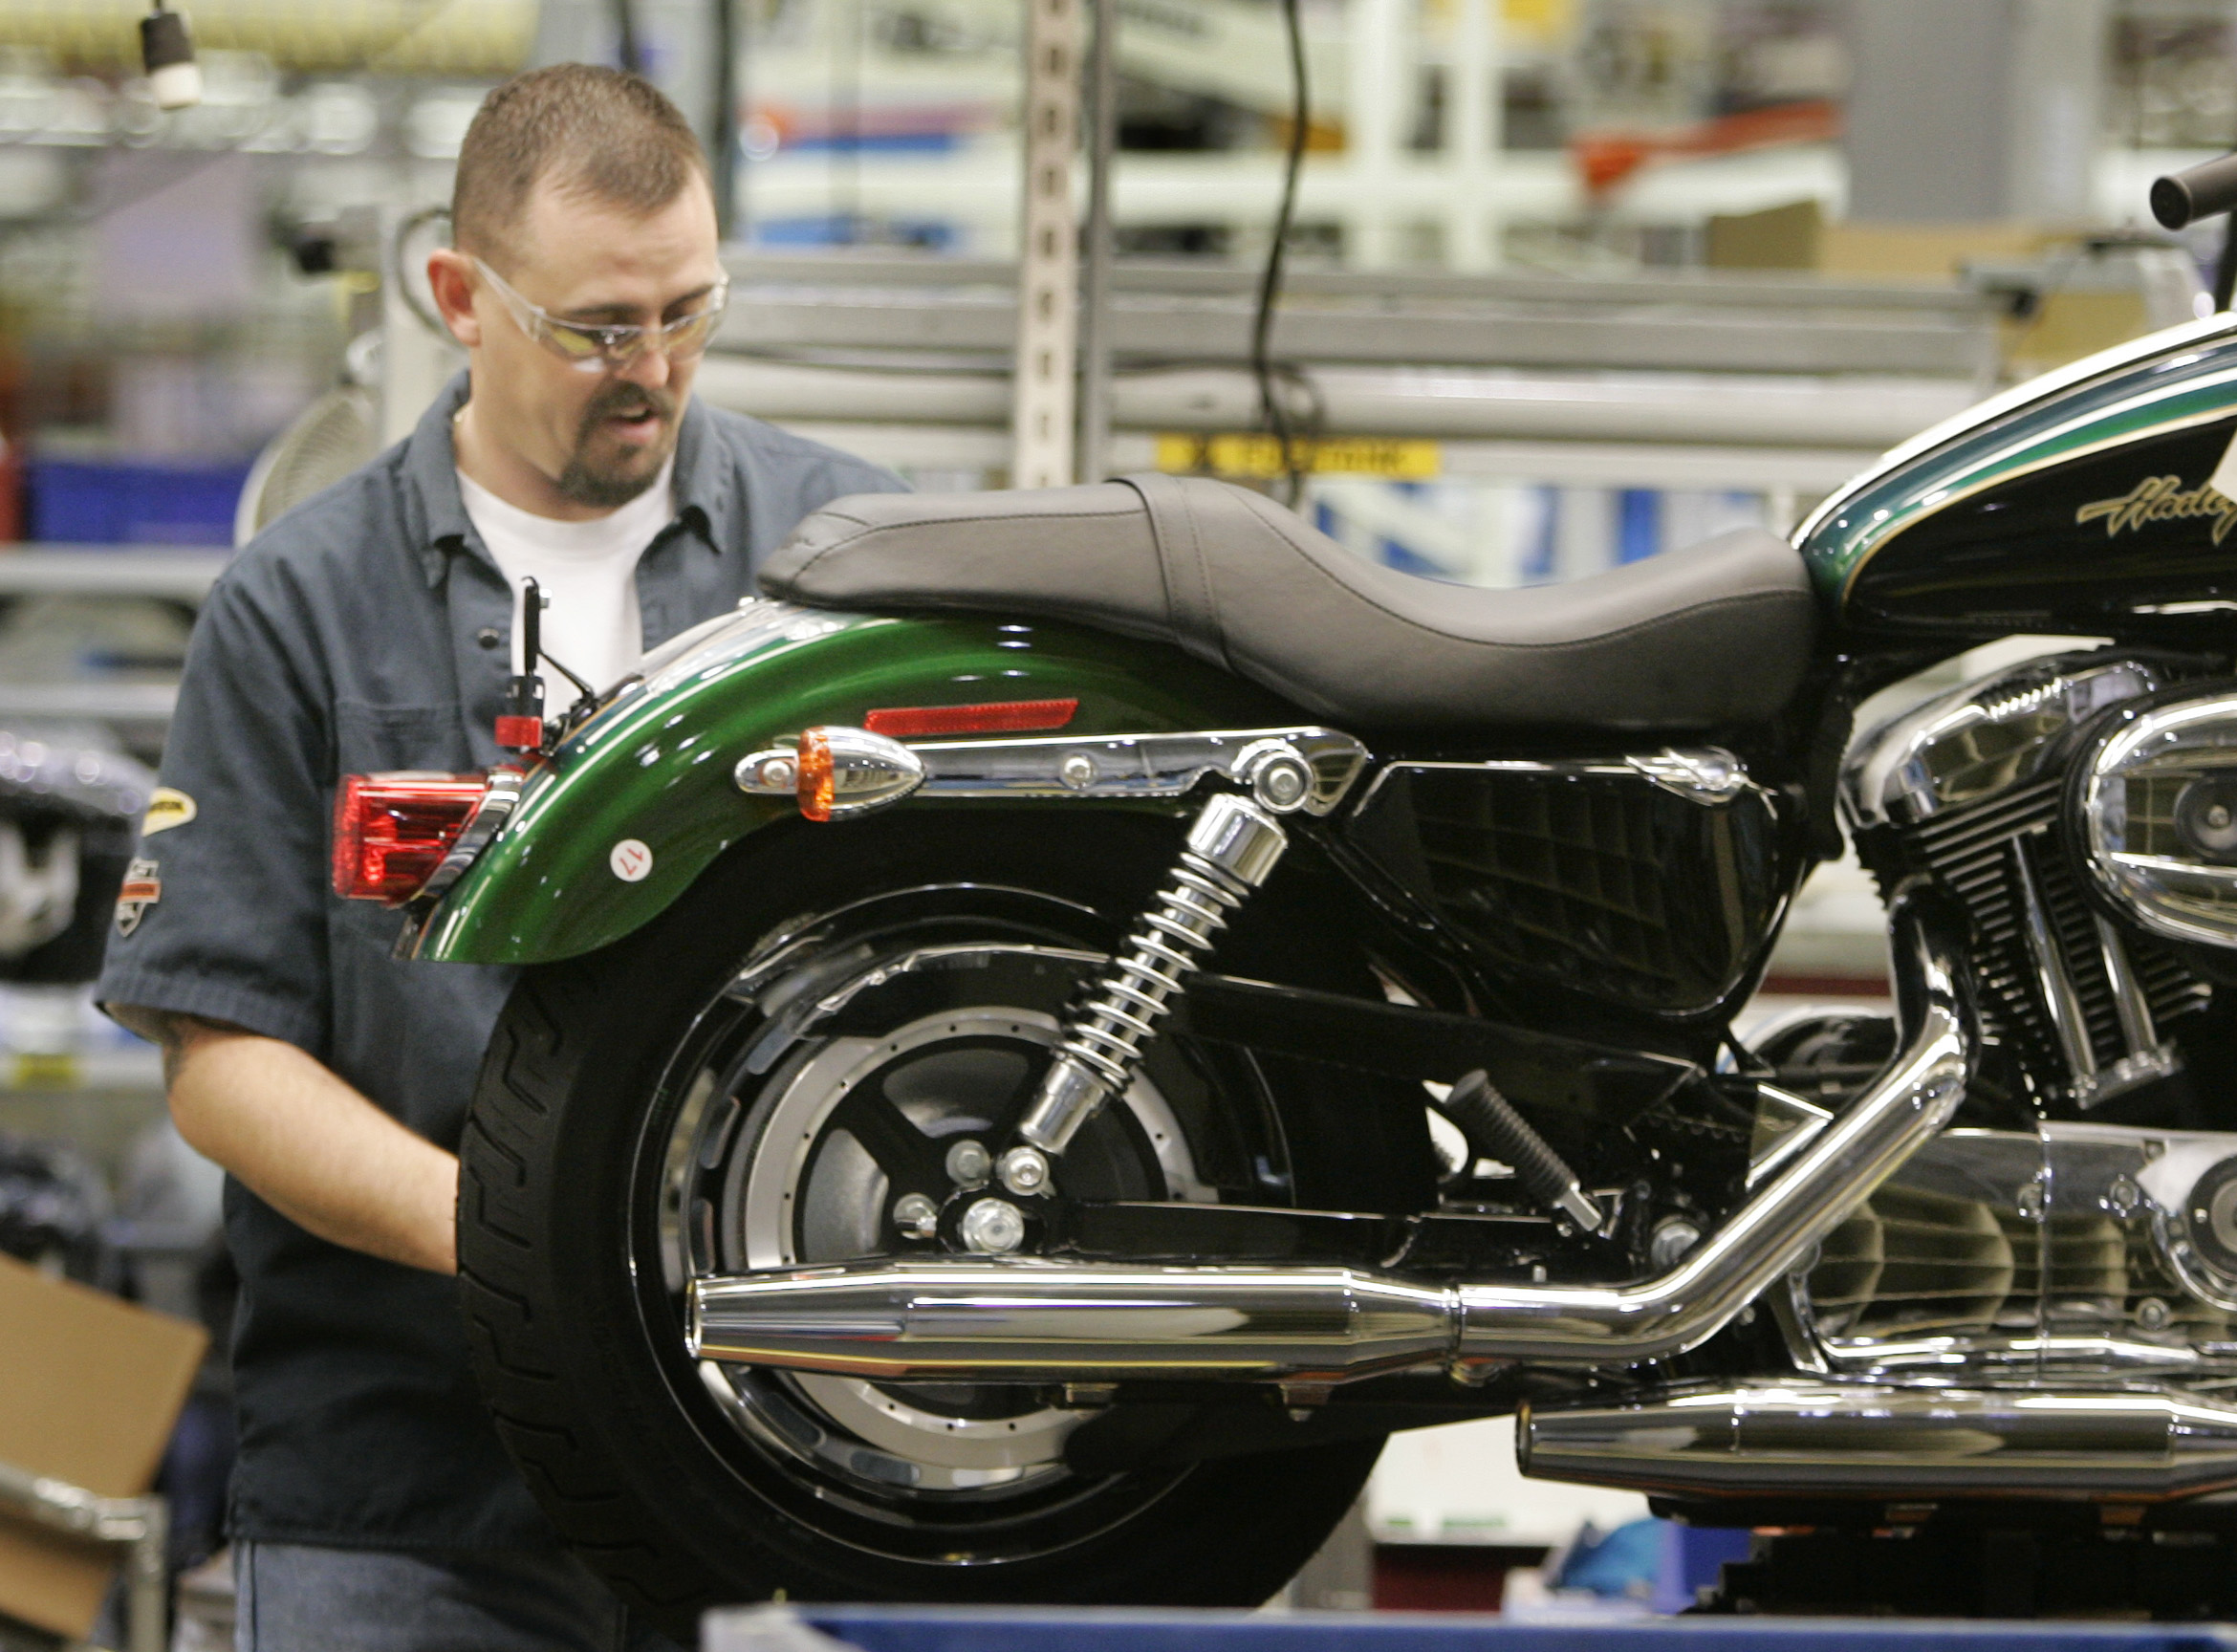 Man working on Harley Davidson motorcycle